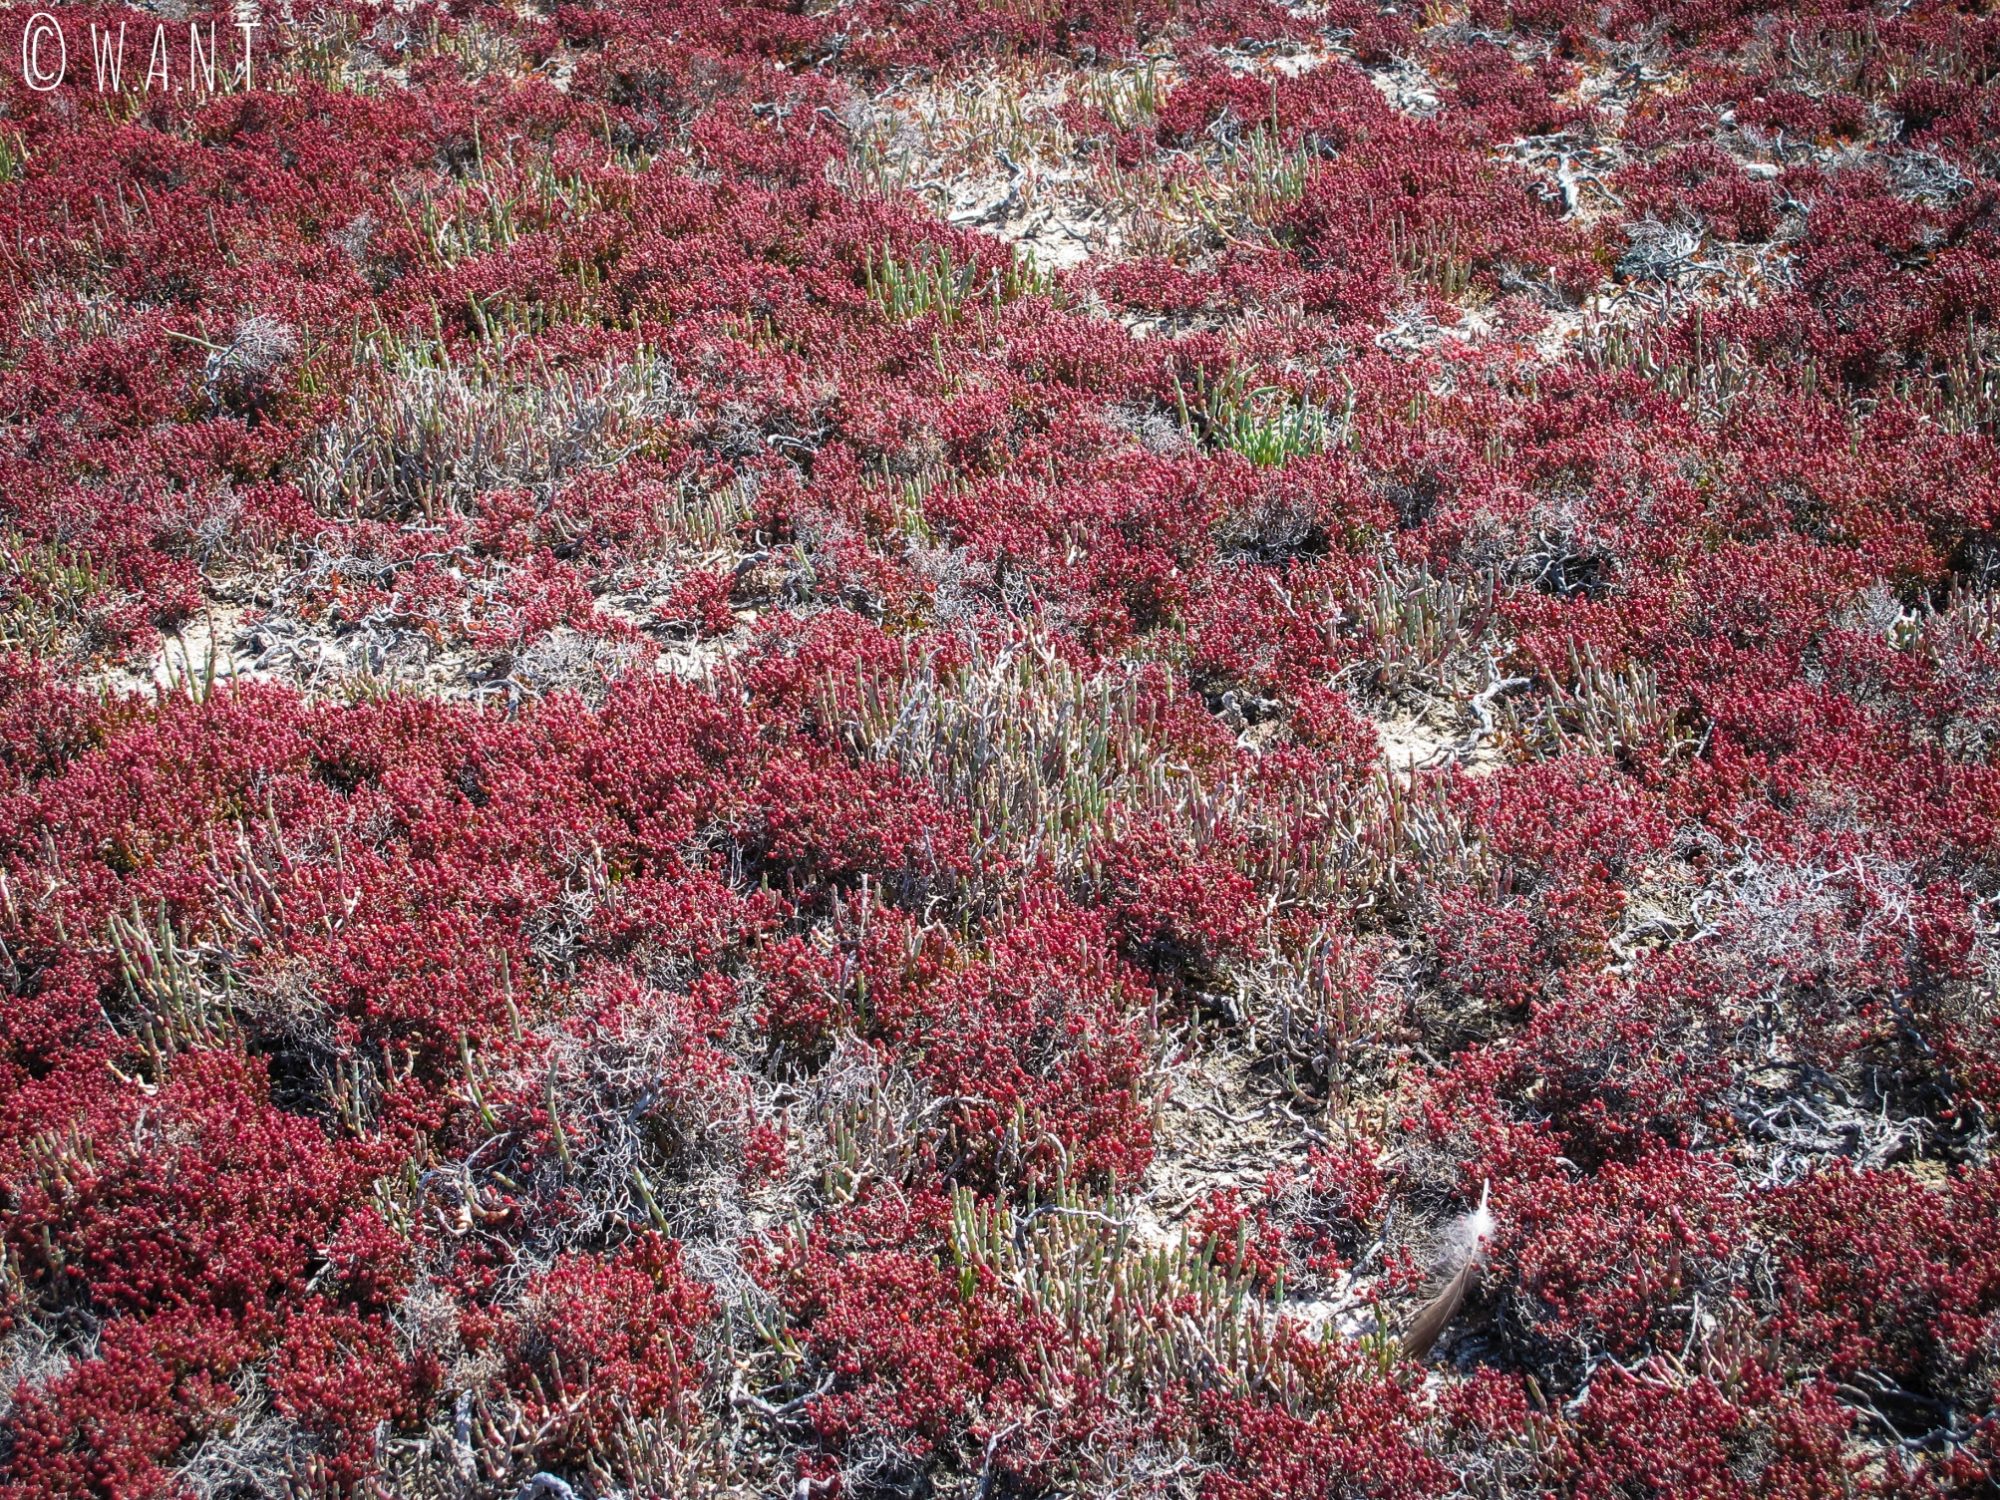 Plantes rouges autour du Pink Lake de Rottnest Island